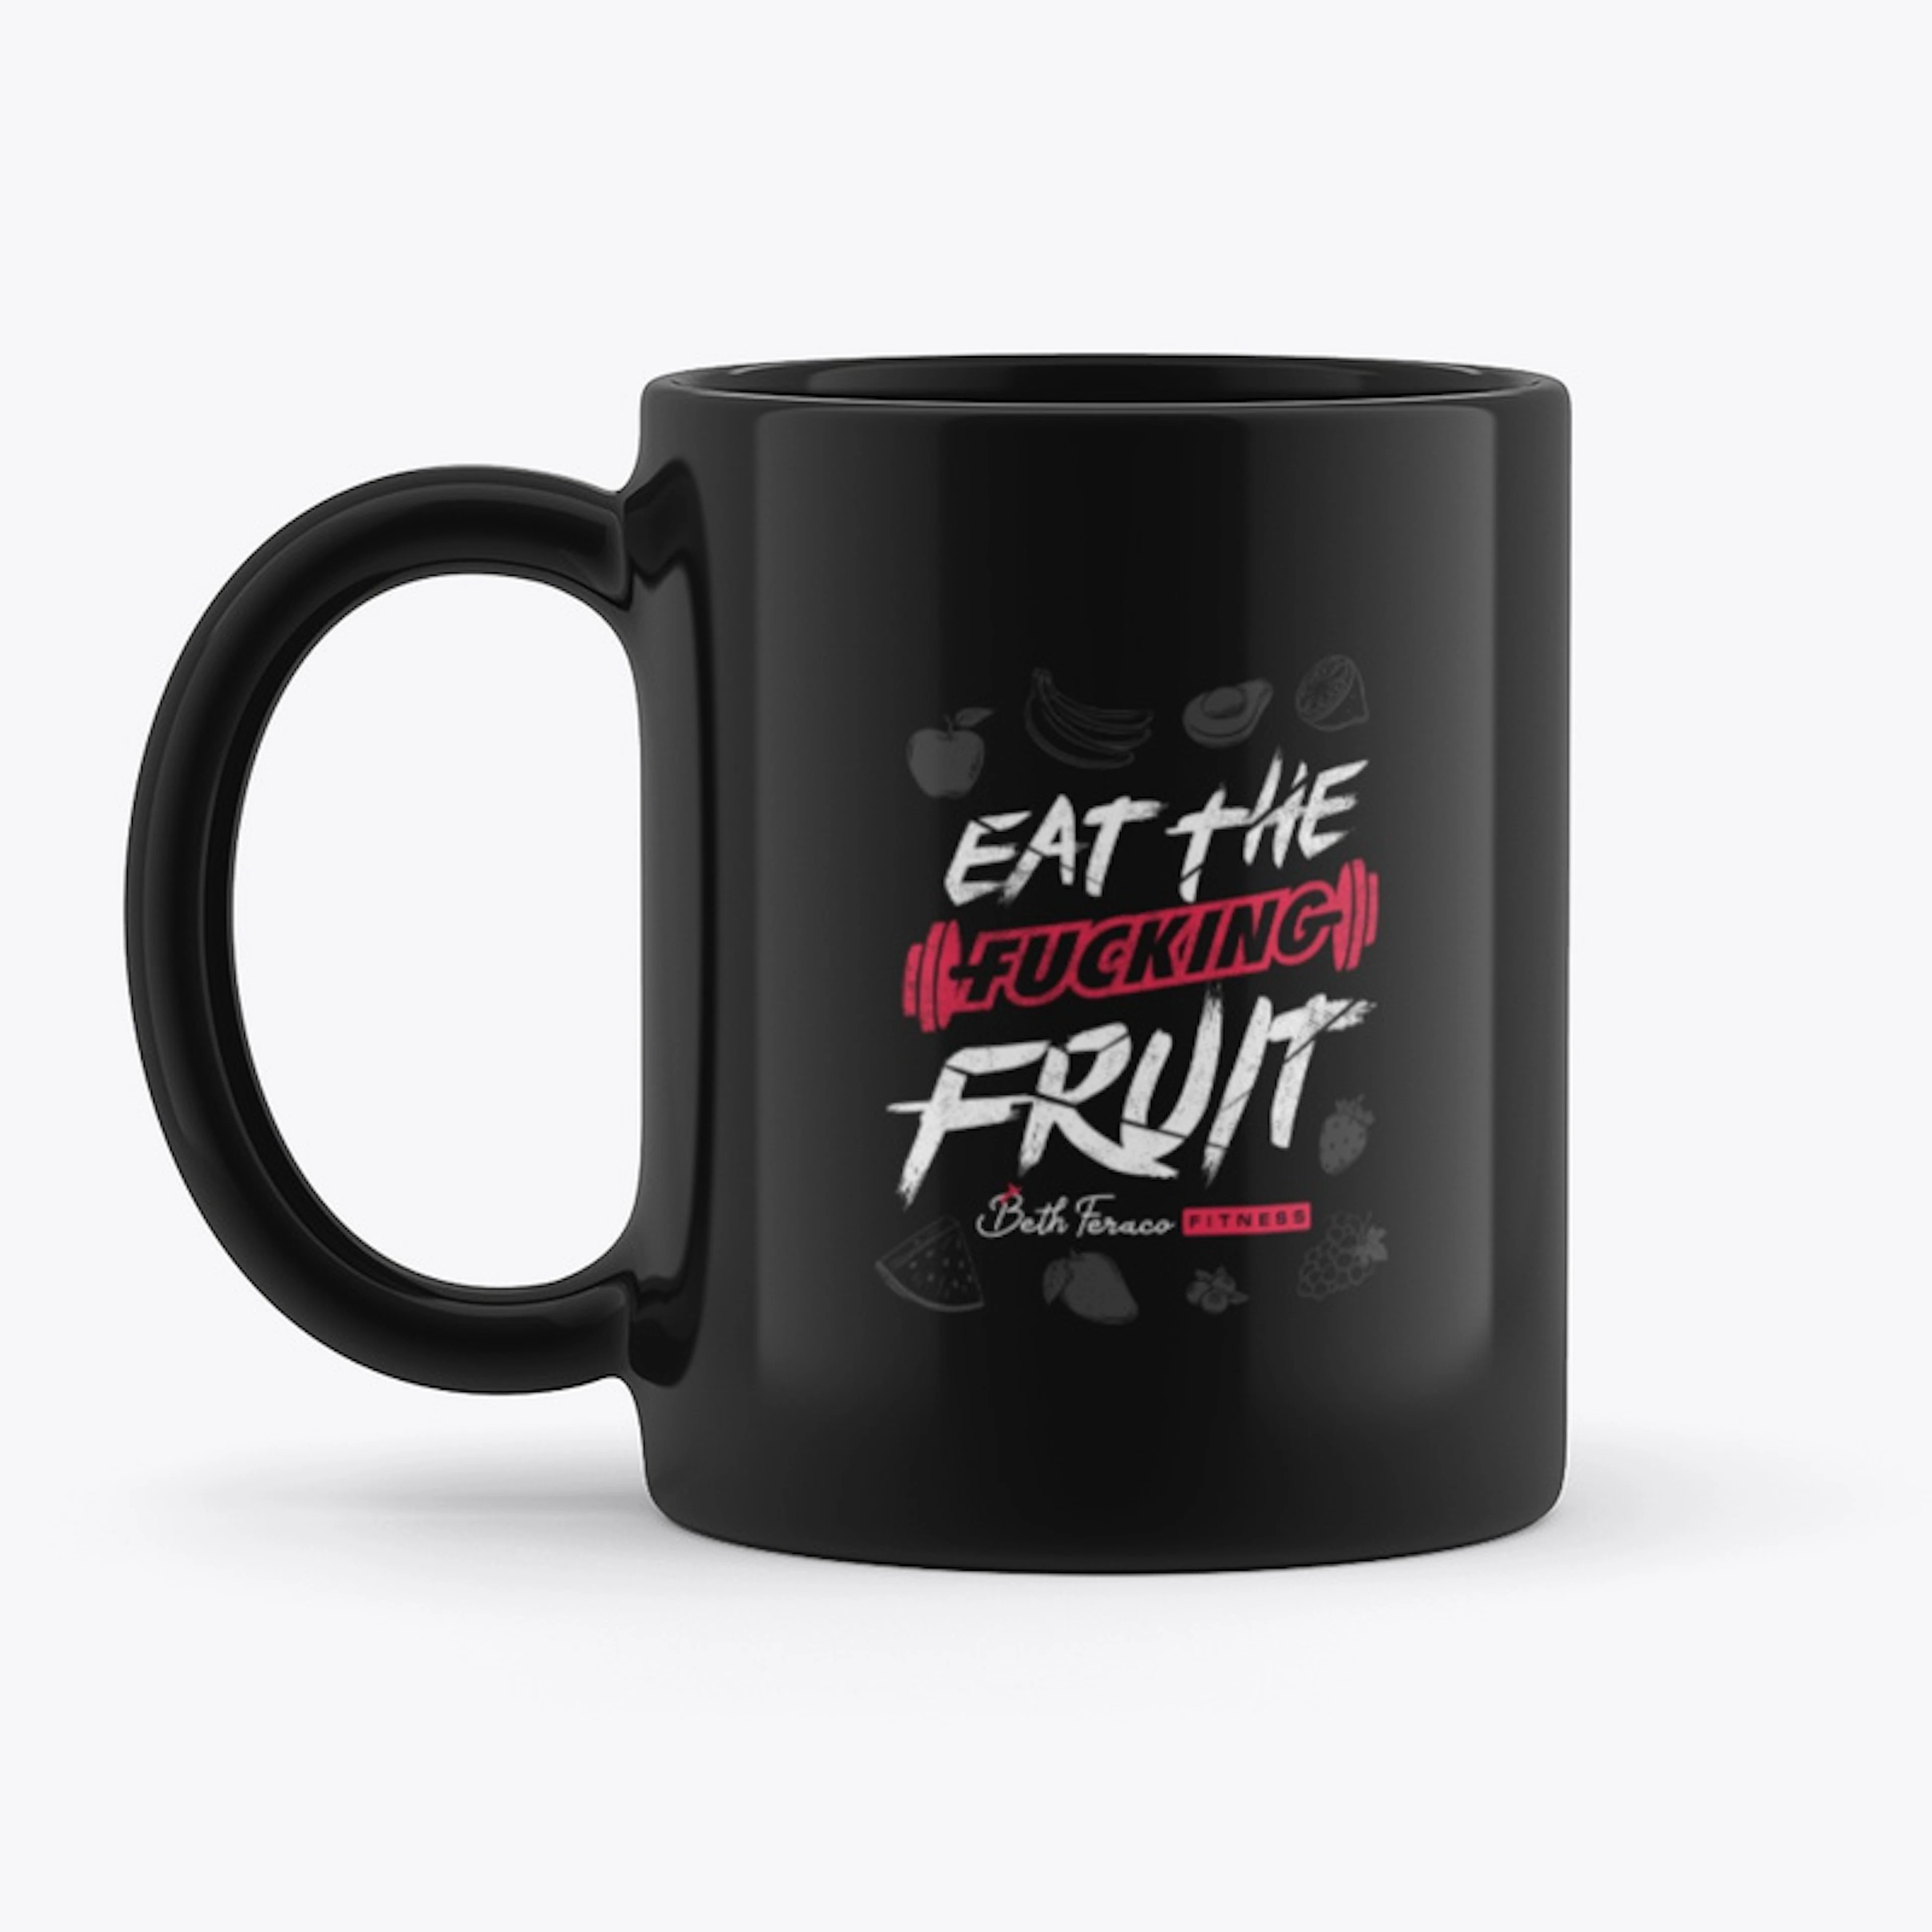 Eat the fucking fruit